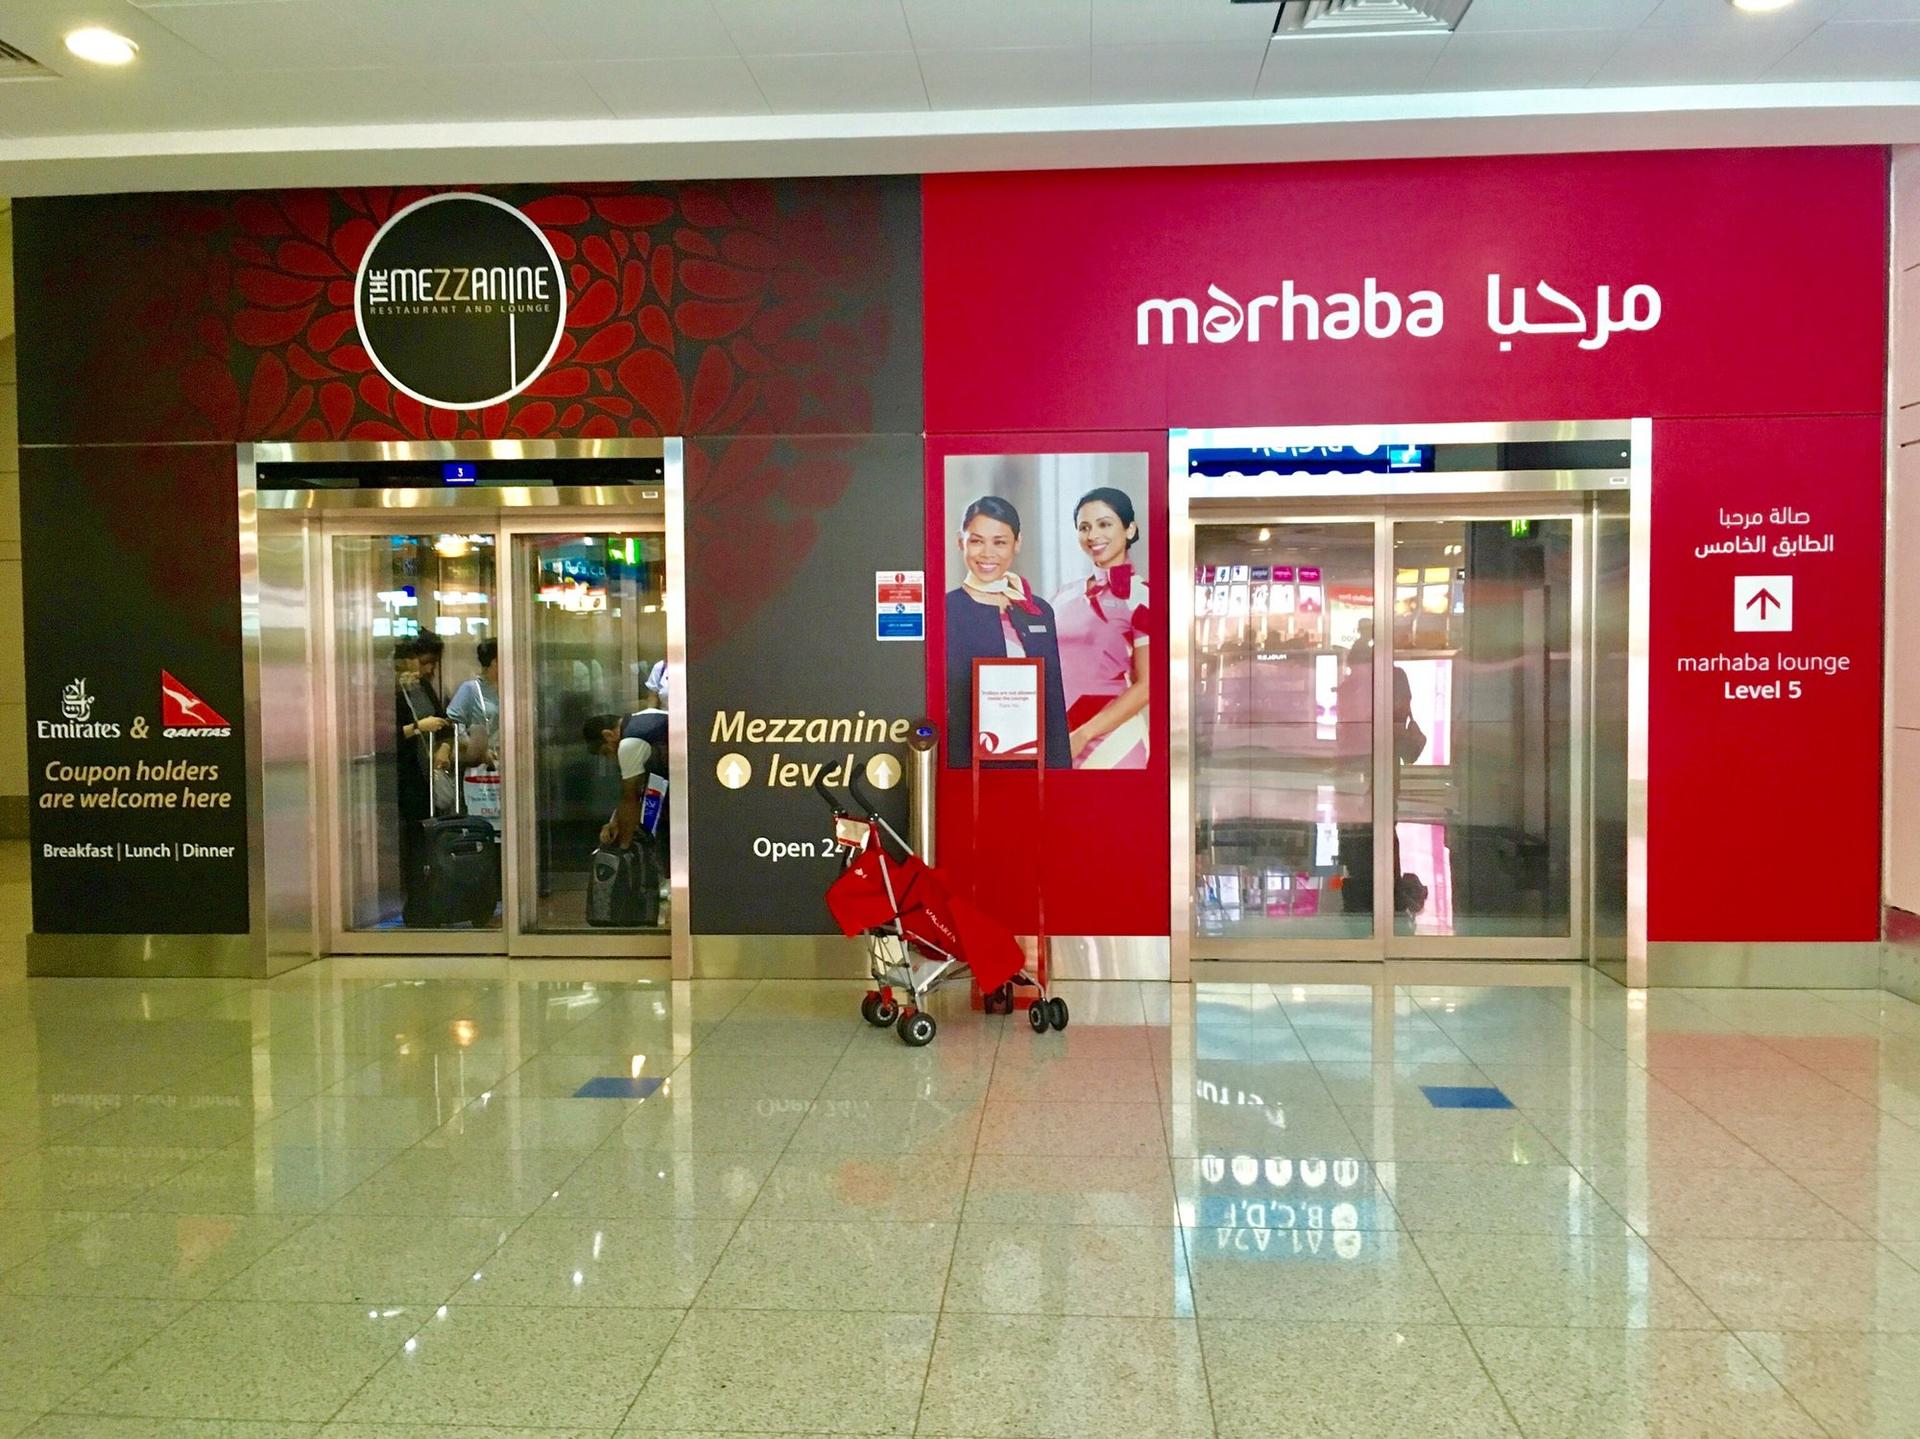 Marhaba Lounge image 19 of 40